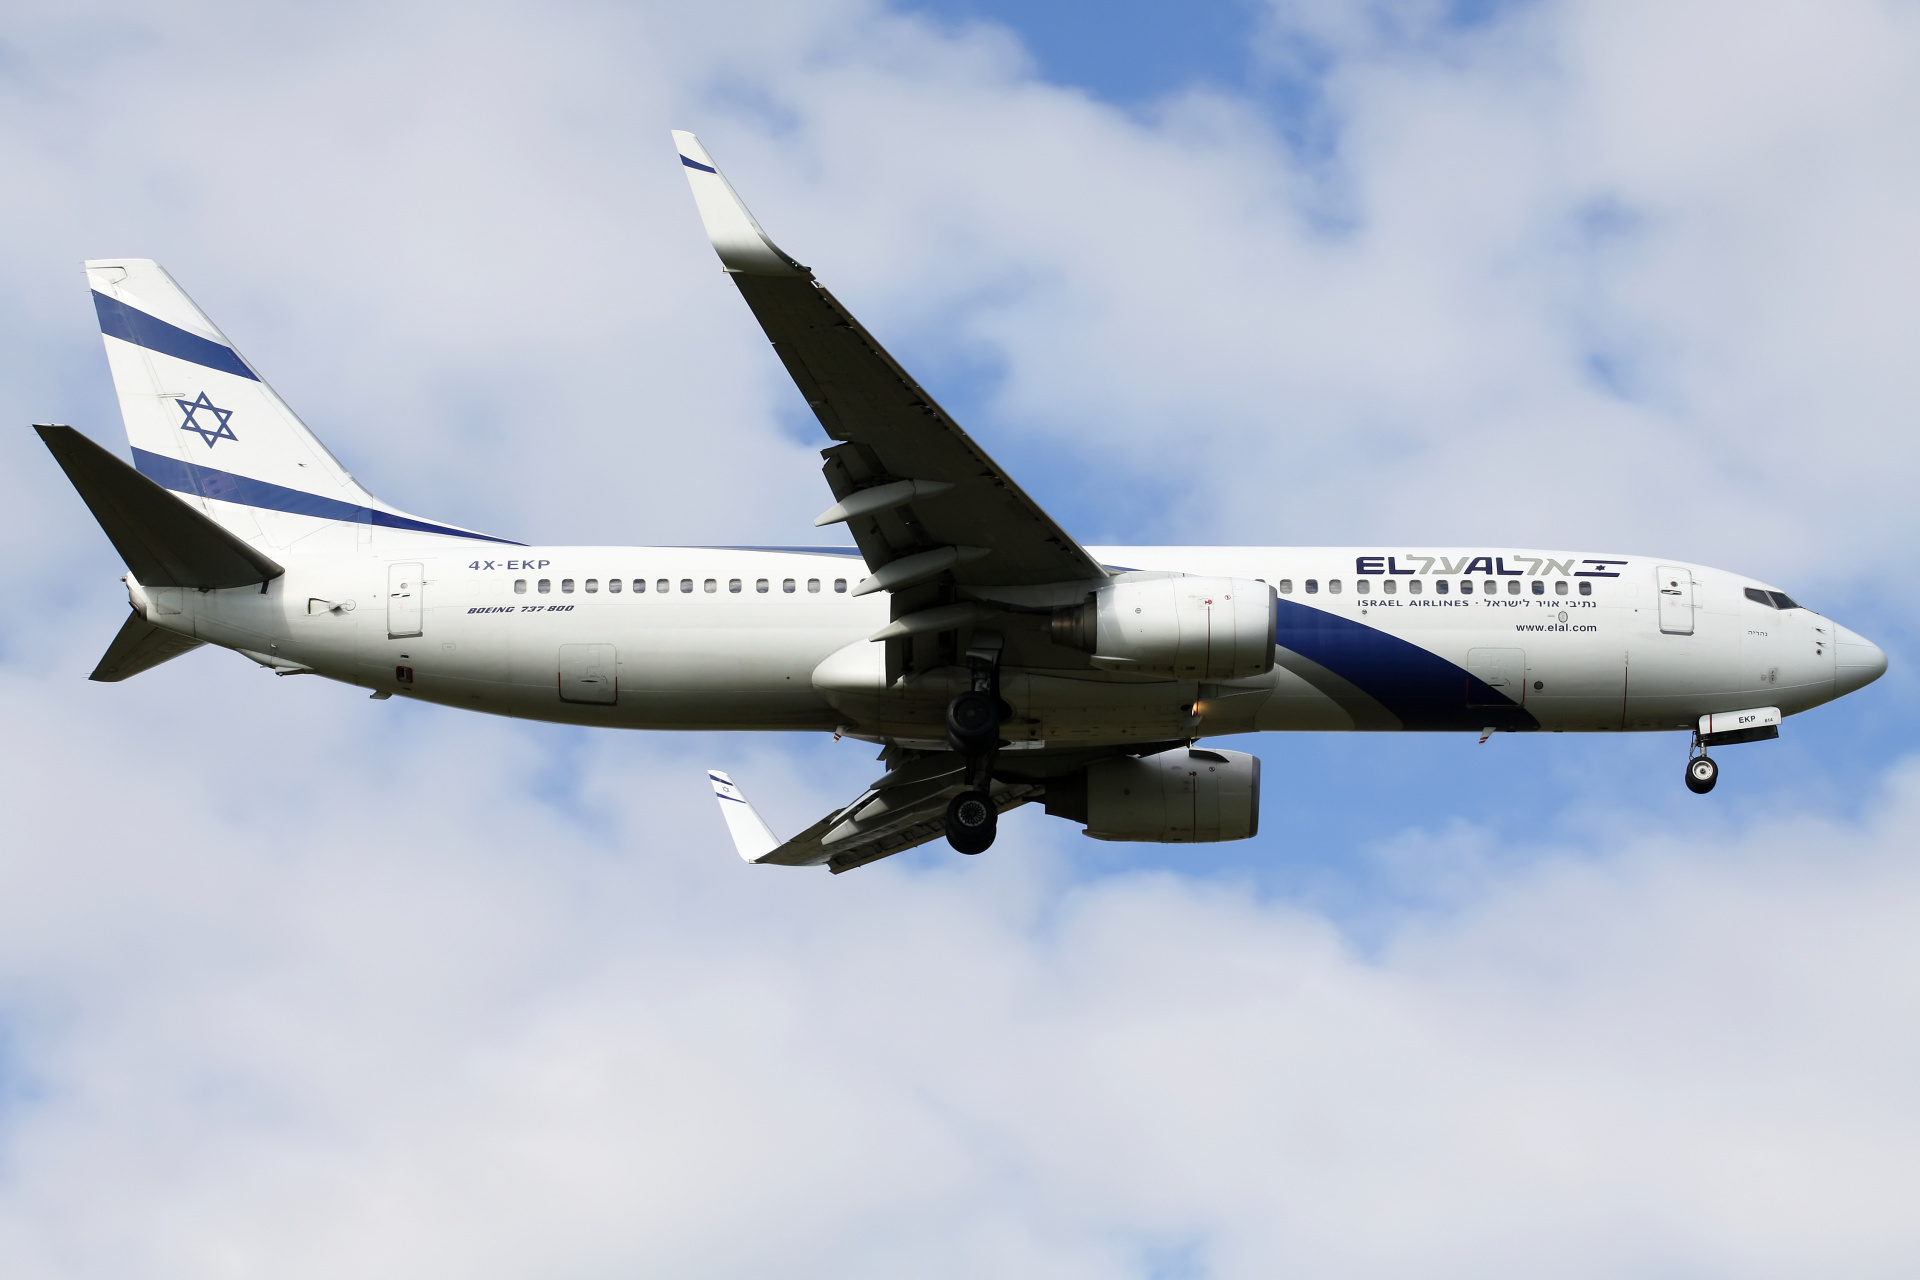 4X-EKP (Aircraft » EPWA Spotting » Boeing 737-800 » El Al Israel Airlines)